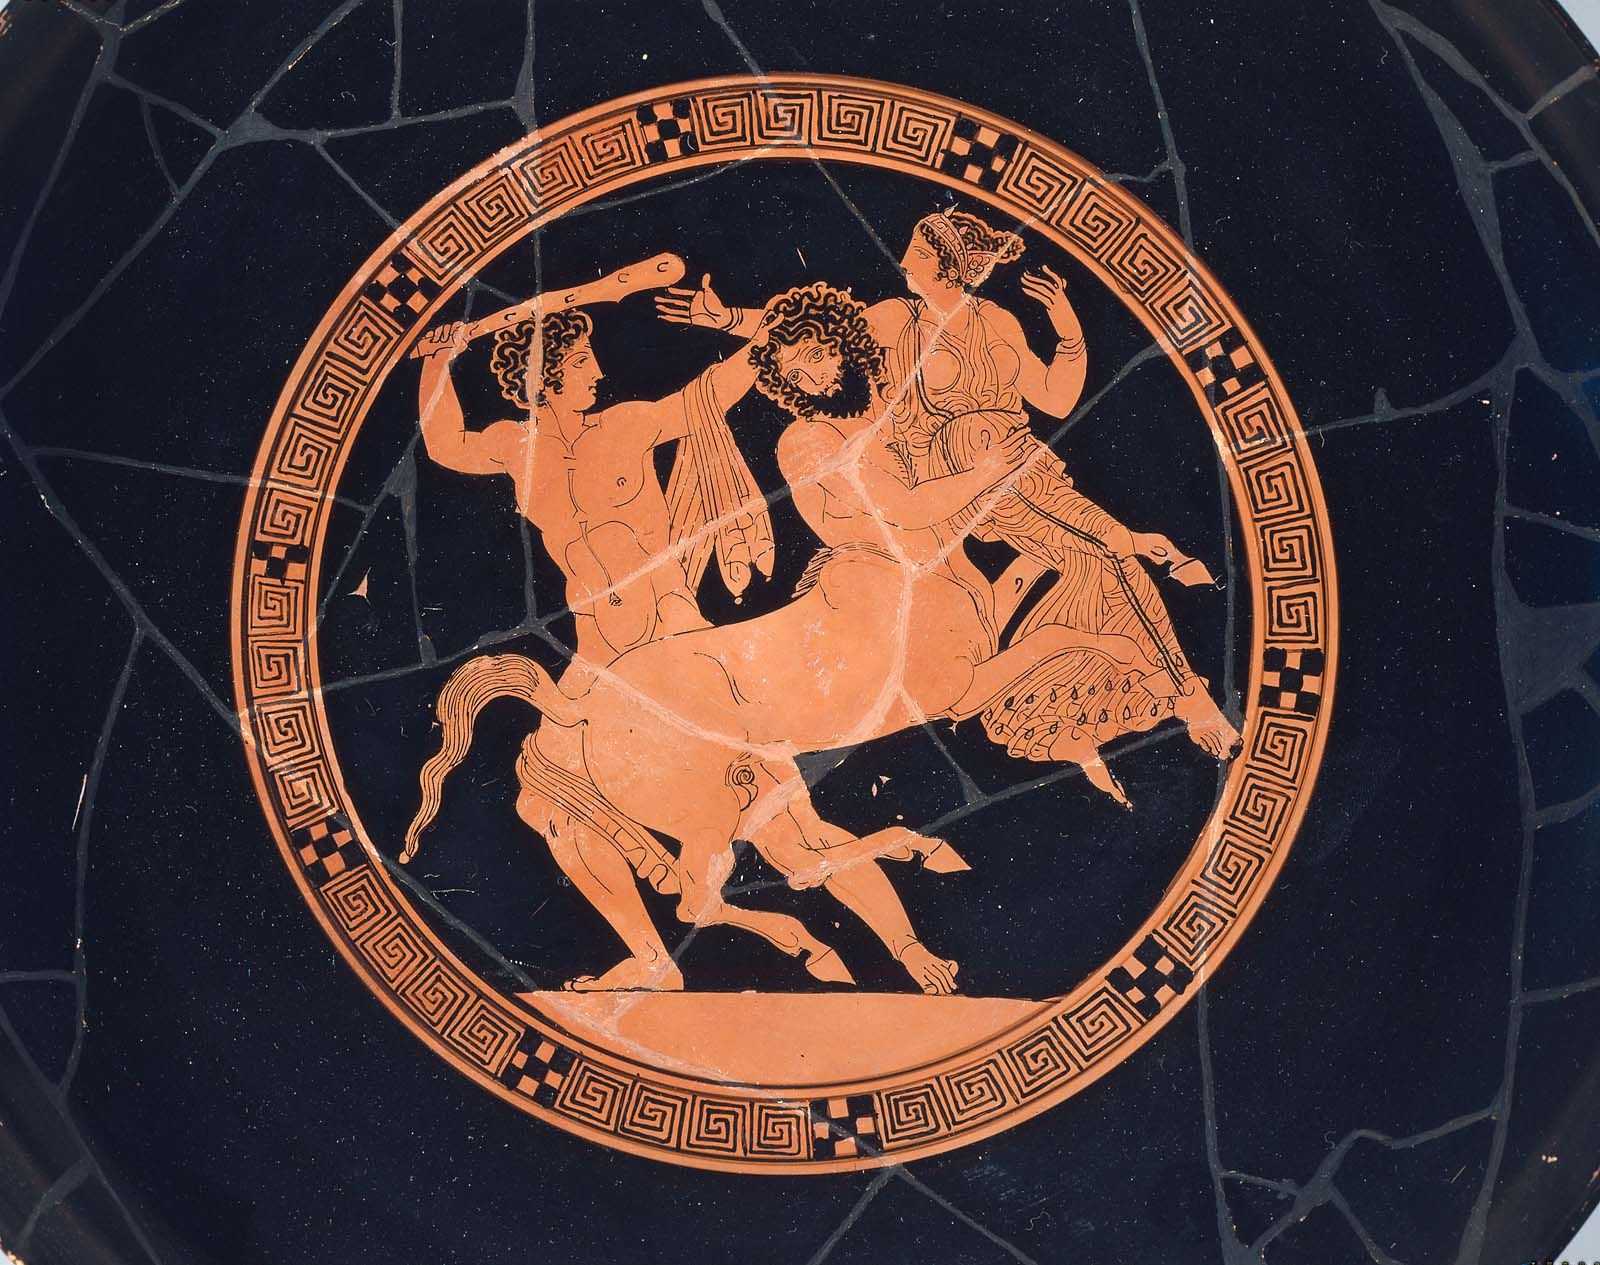 Мифы древней греции и рима. краткое изложение